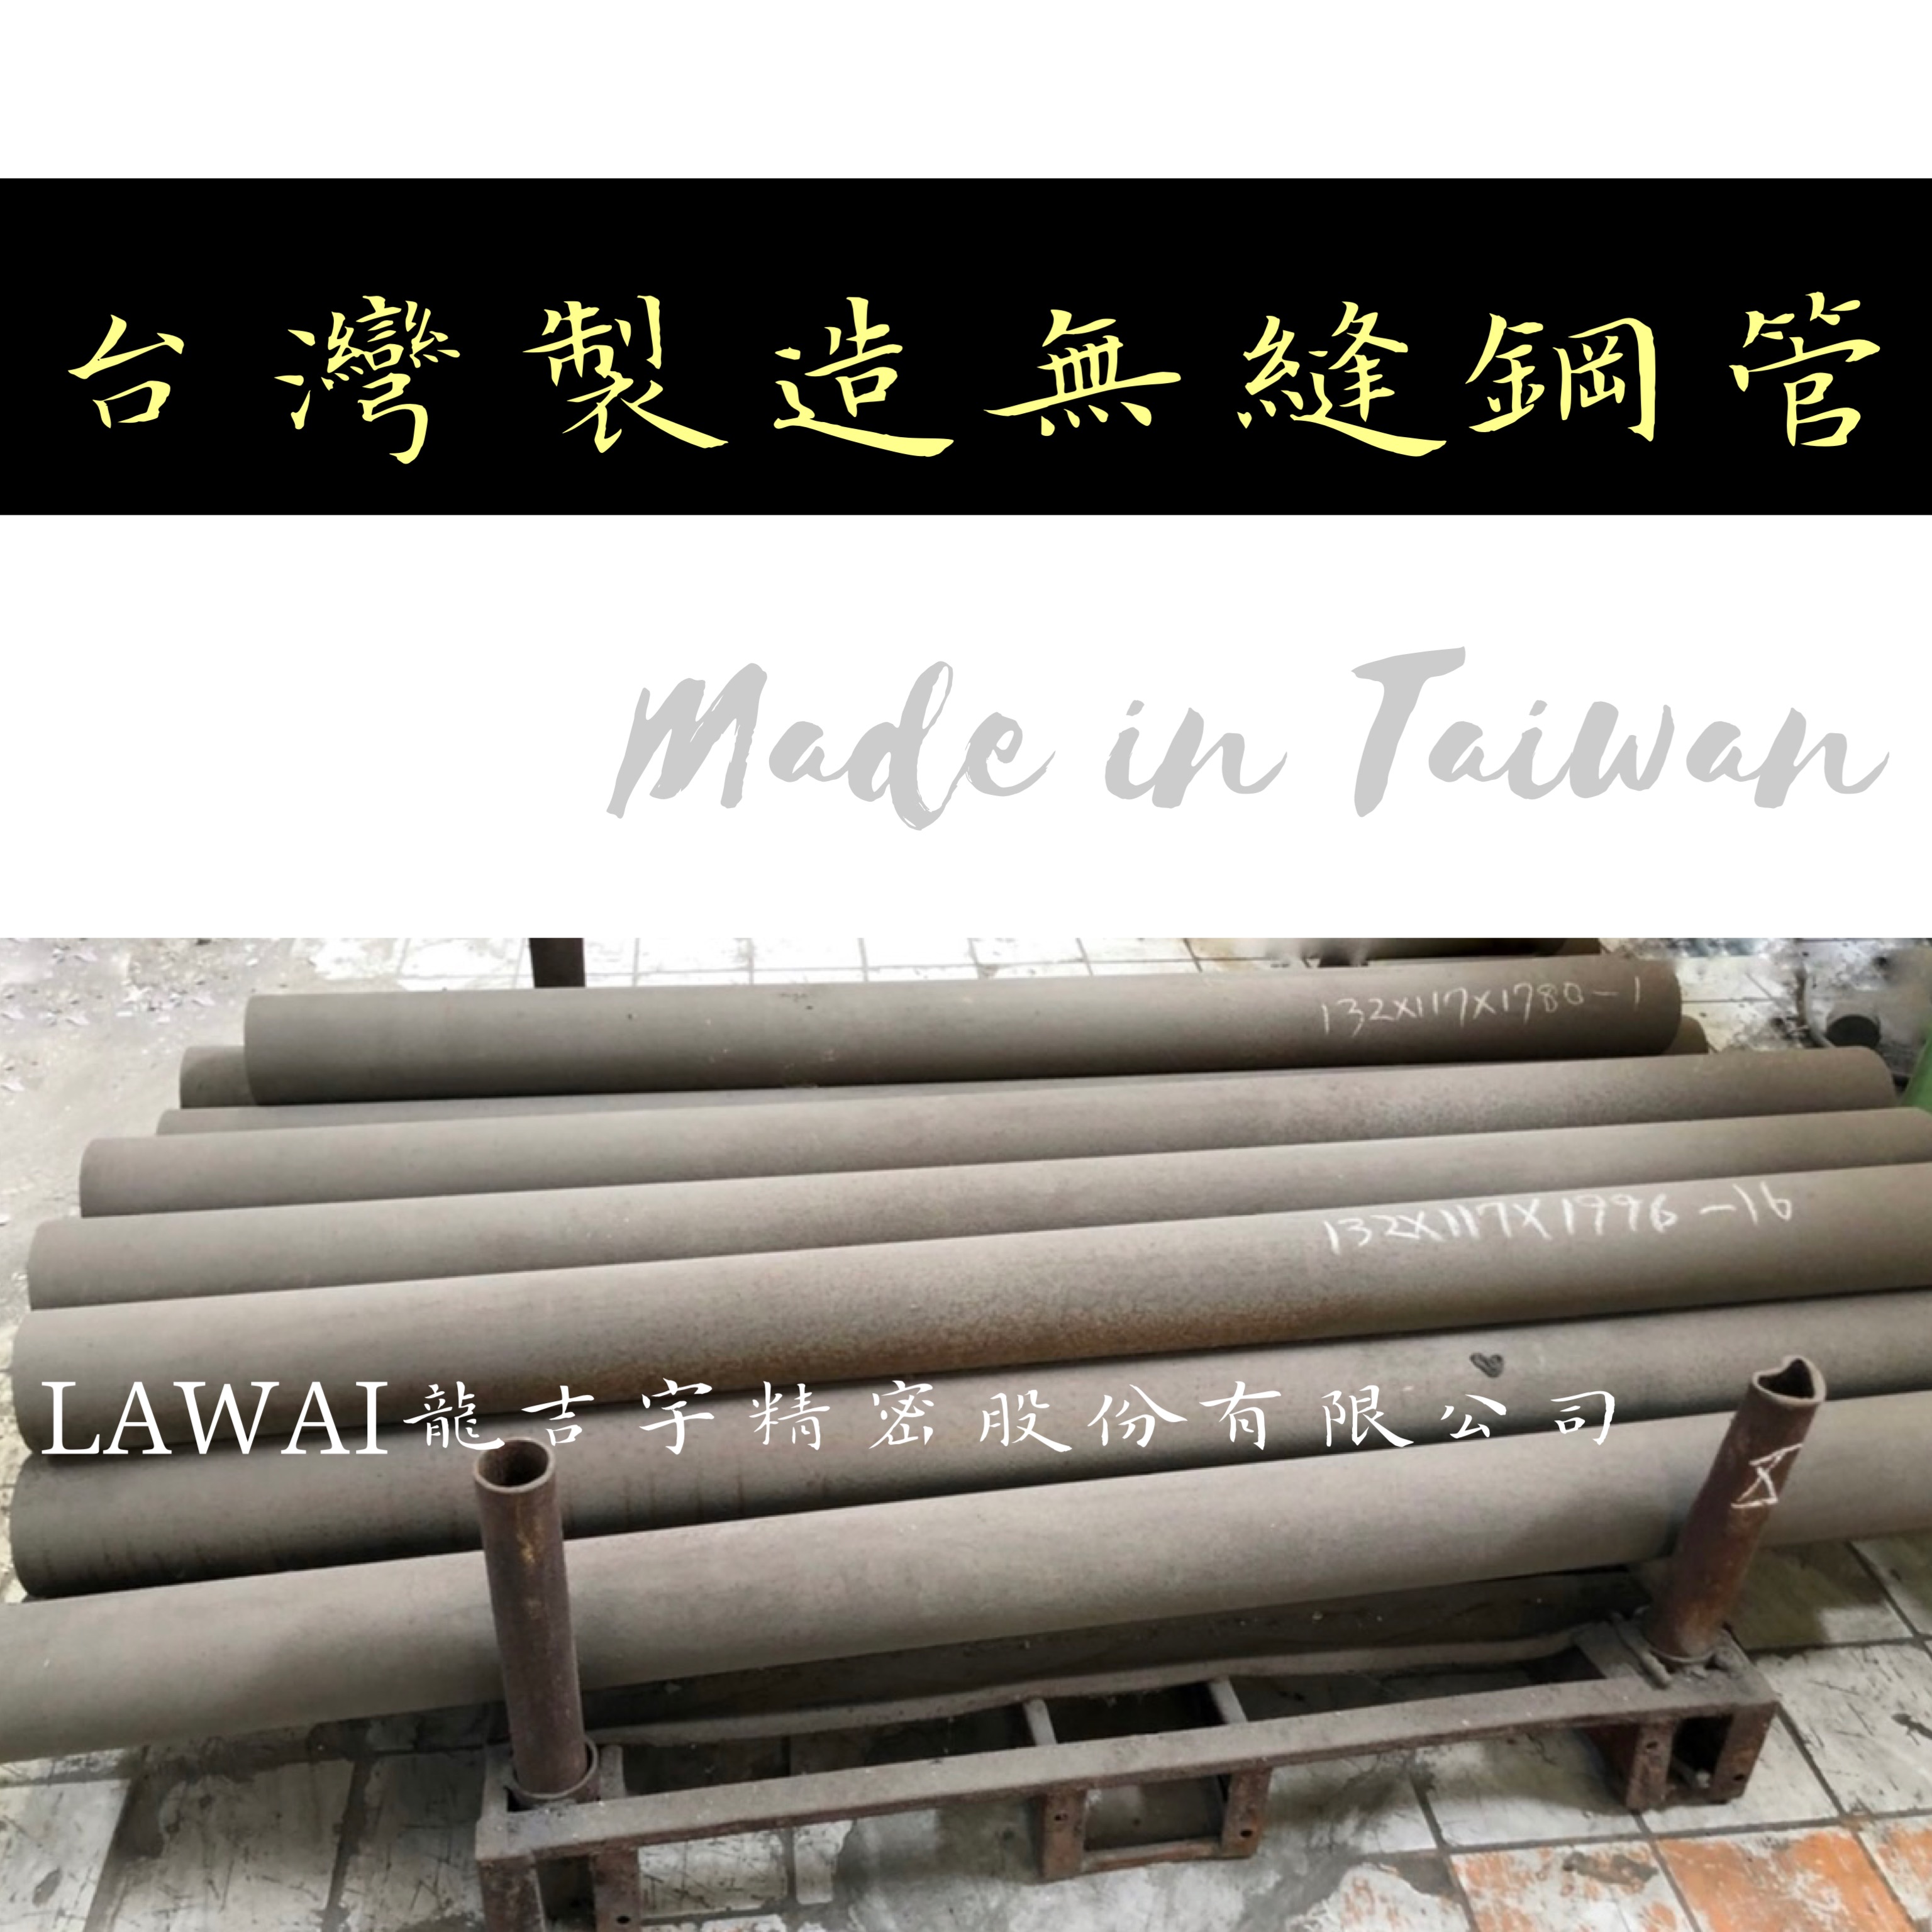 龍吉宇精密股份有限公司為無縫鋼管供應商採離心鑄造技術生產